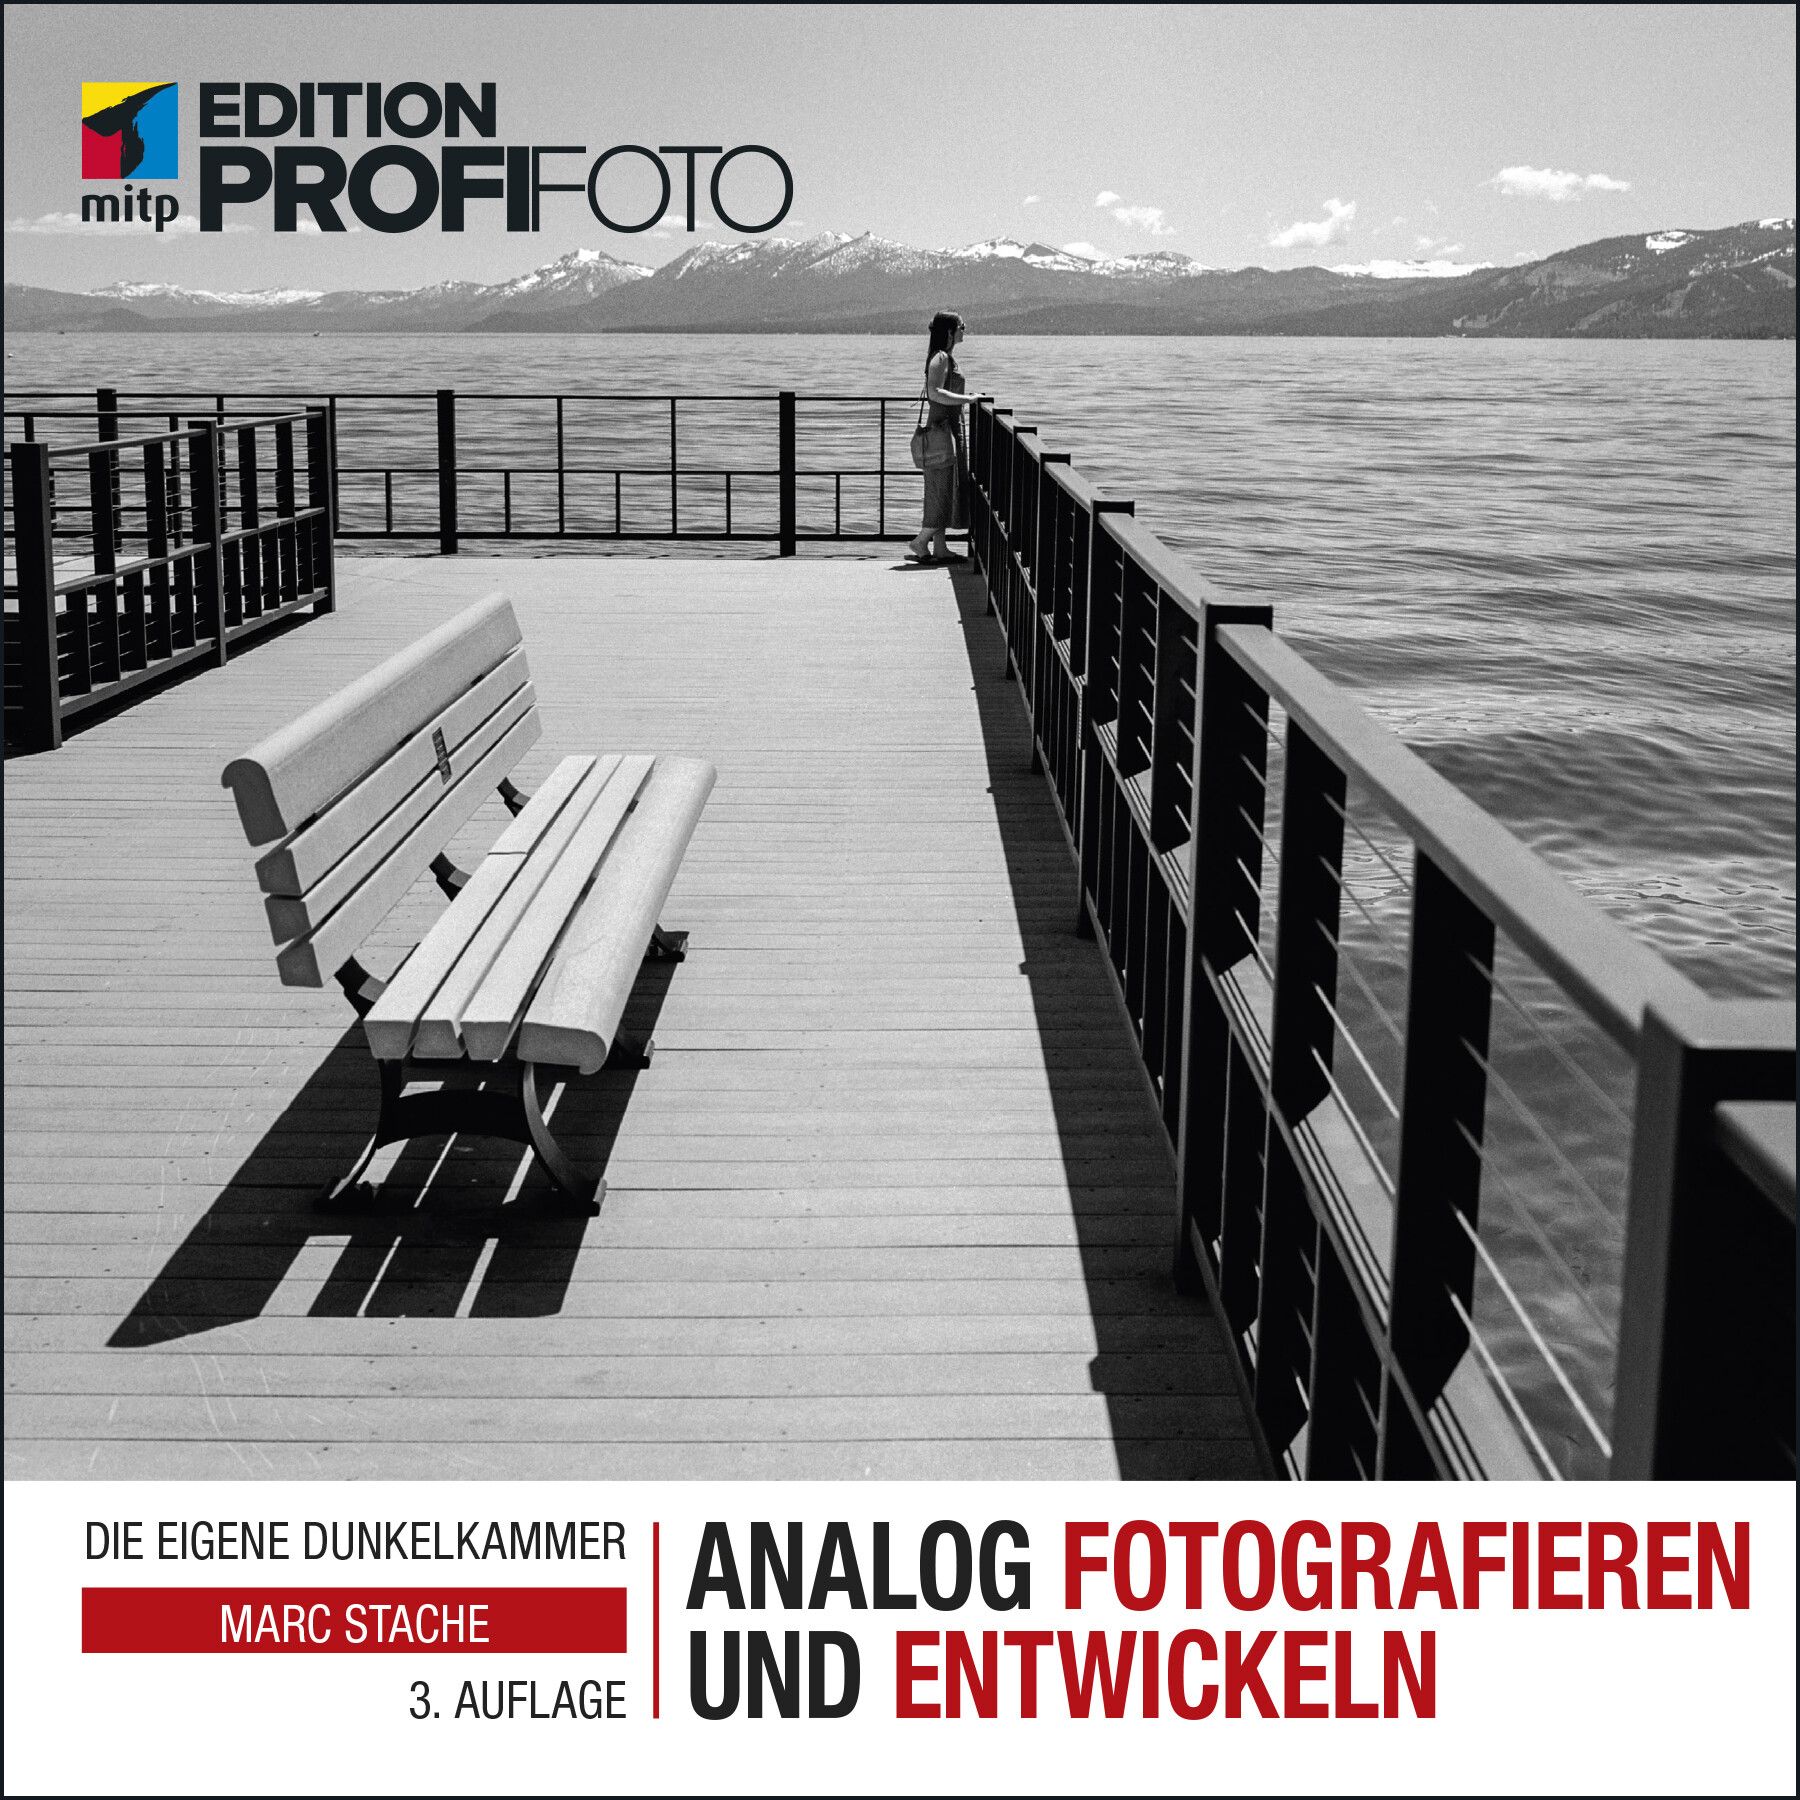 Analog fotografieren und entwickeln (3. Auflg.)